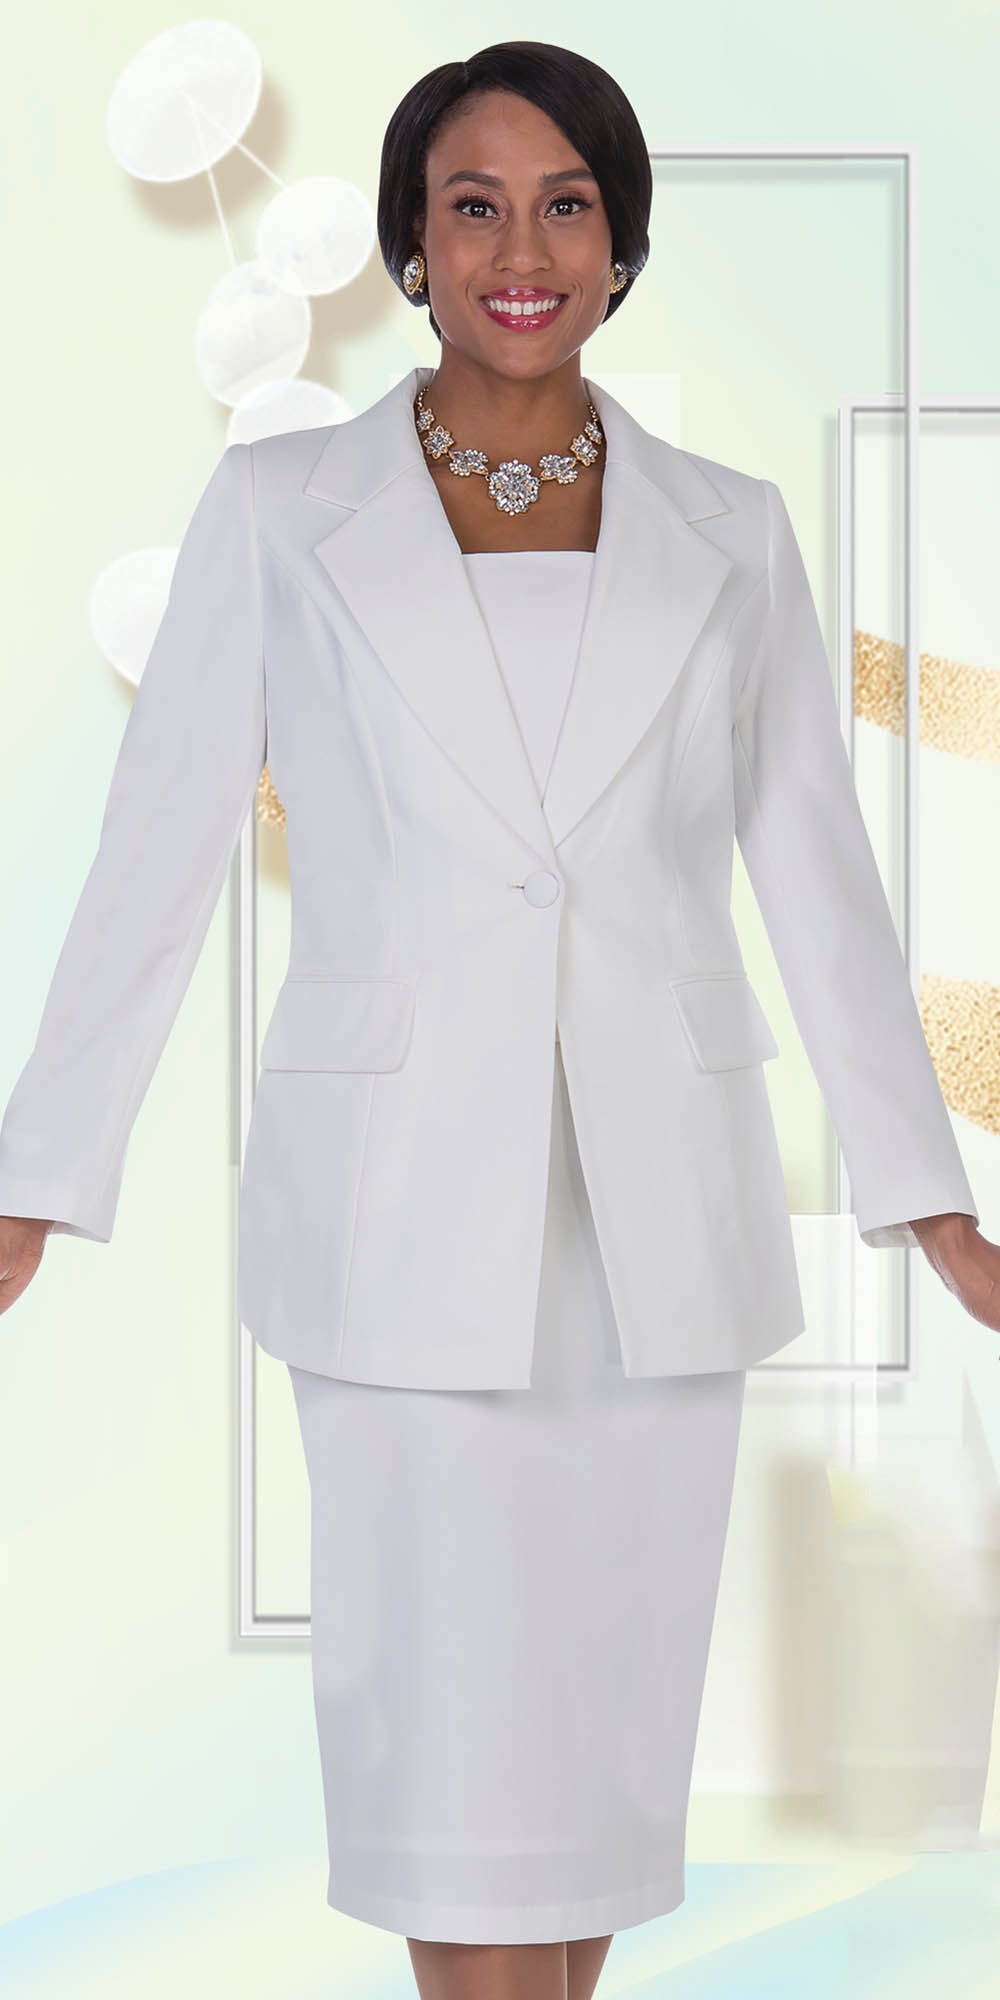 Aussie Austine - 12441 - White - 2pc Skirt Suit